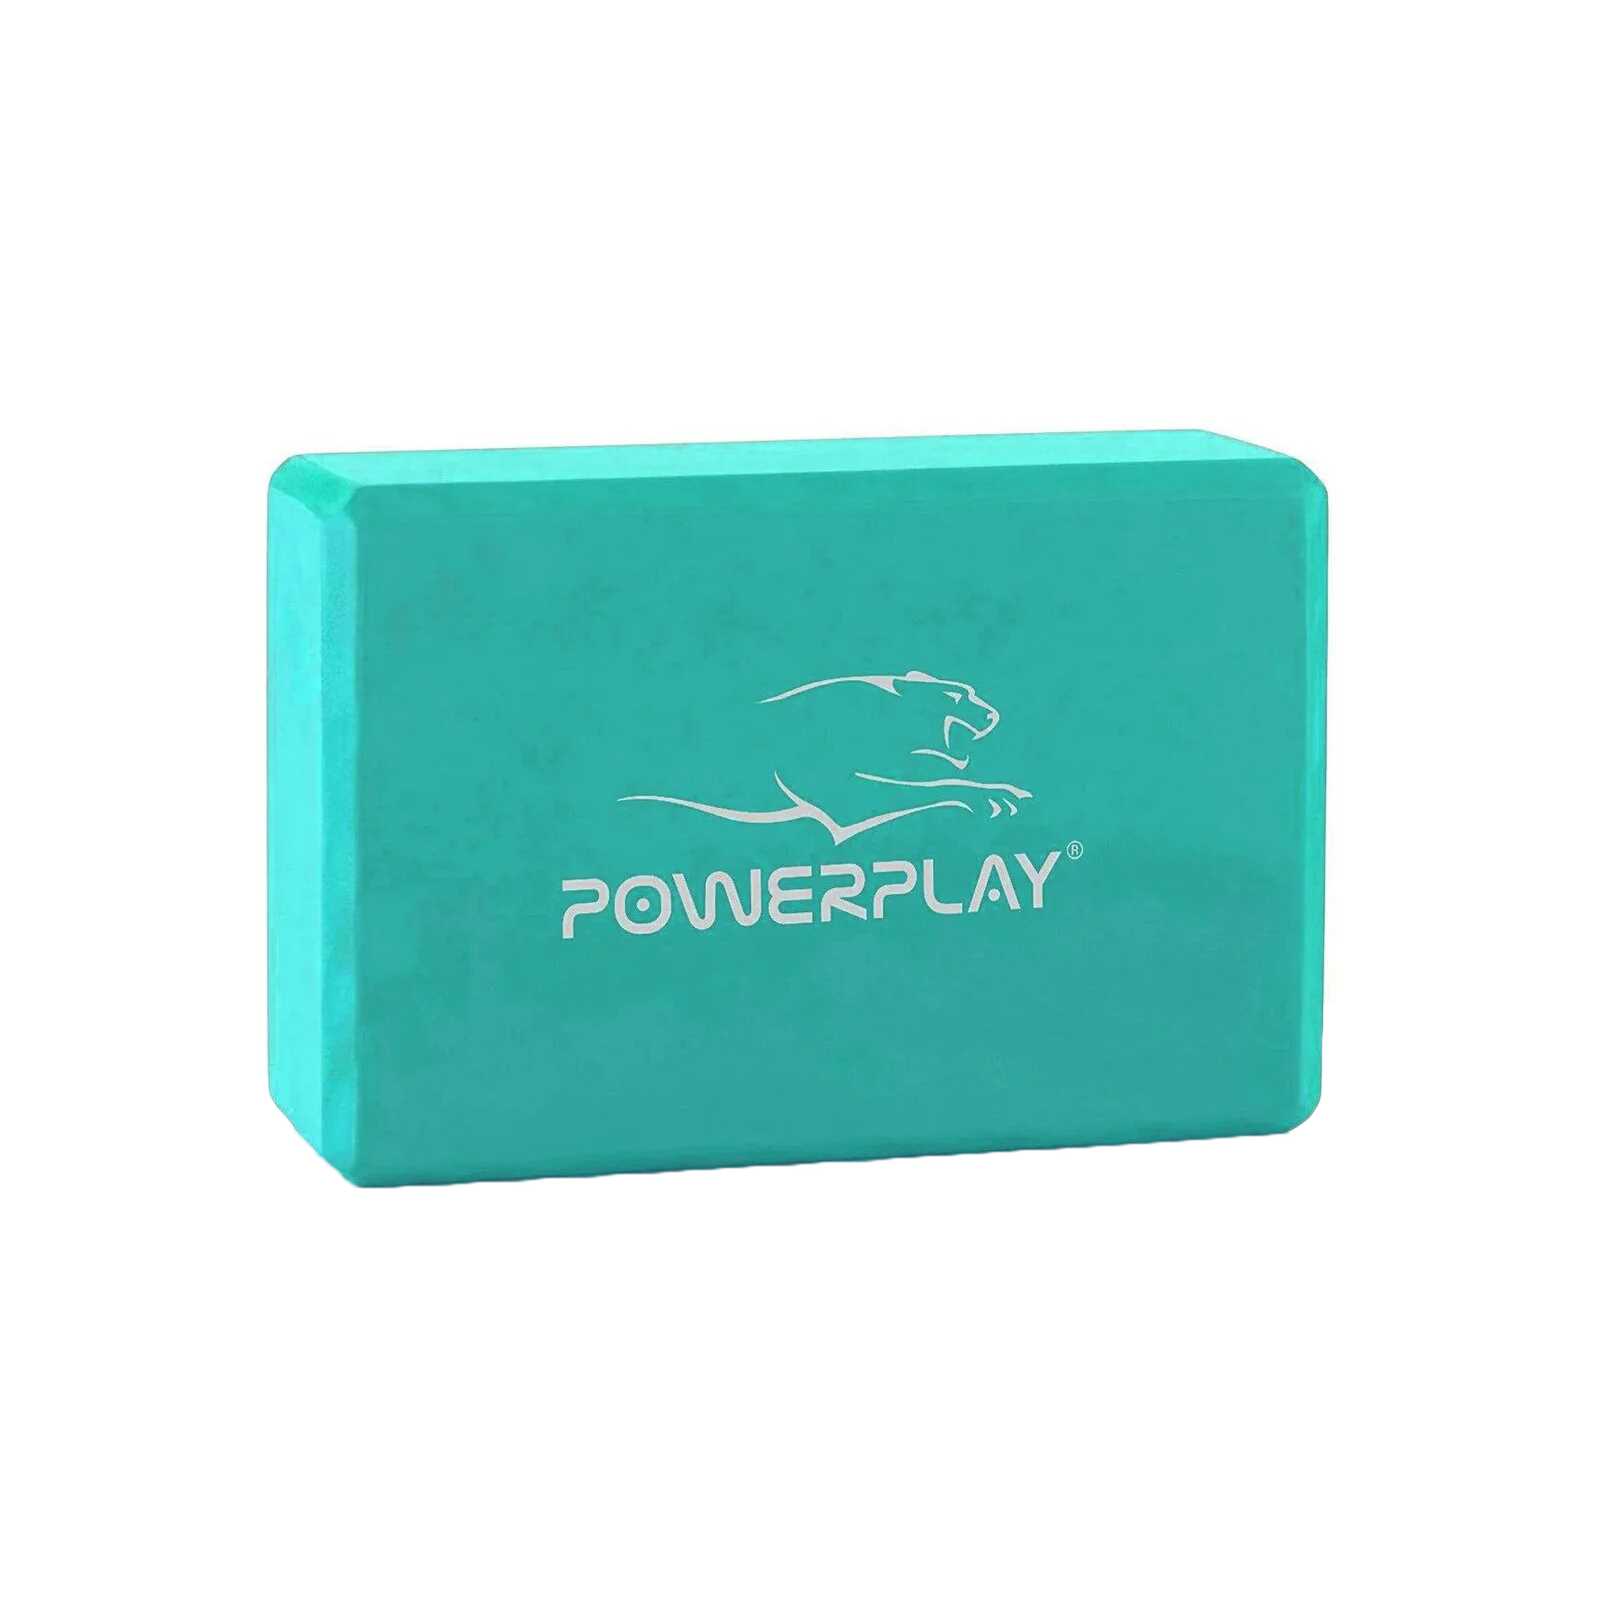 Блок для йоги PowerPlay 4006 Yoga Brick Синий (PP_4006_Blue_Yoga_Brick)